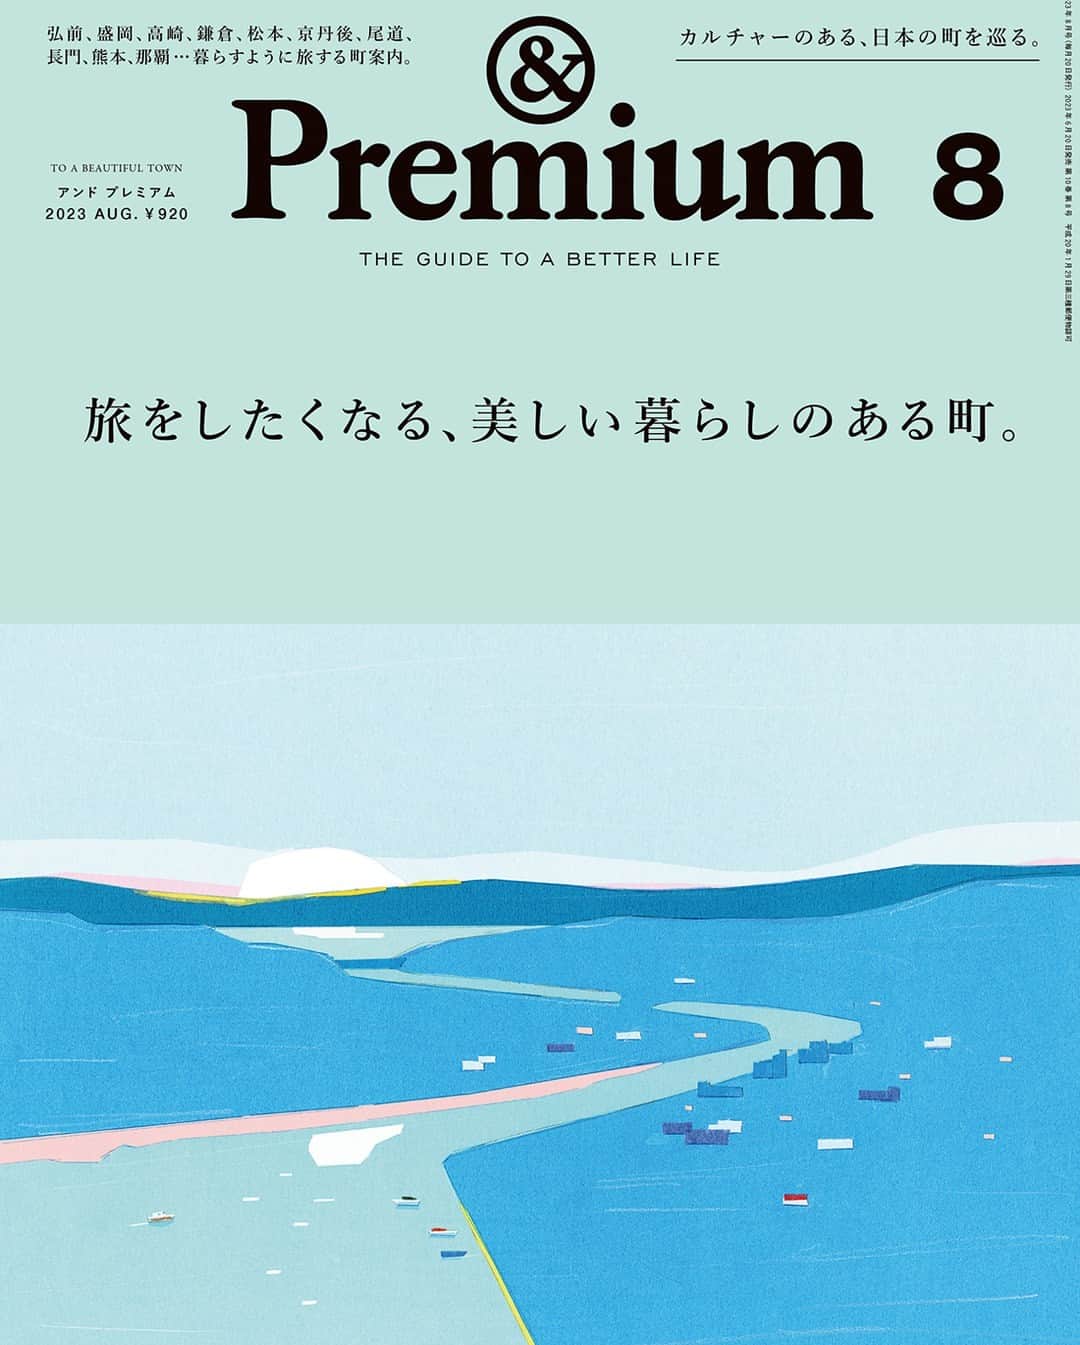 &Premium [&Premium] magazine.のインスタグラム